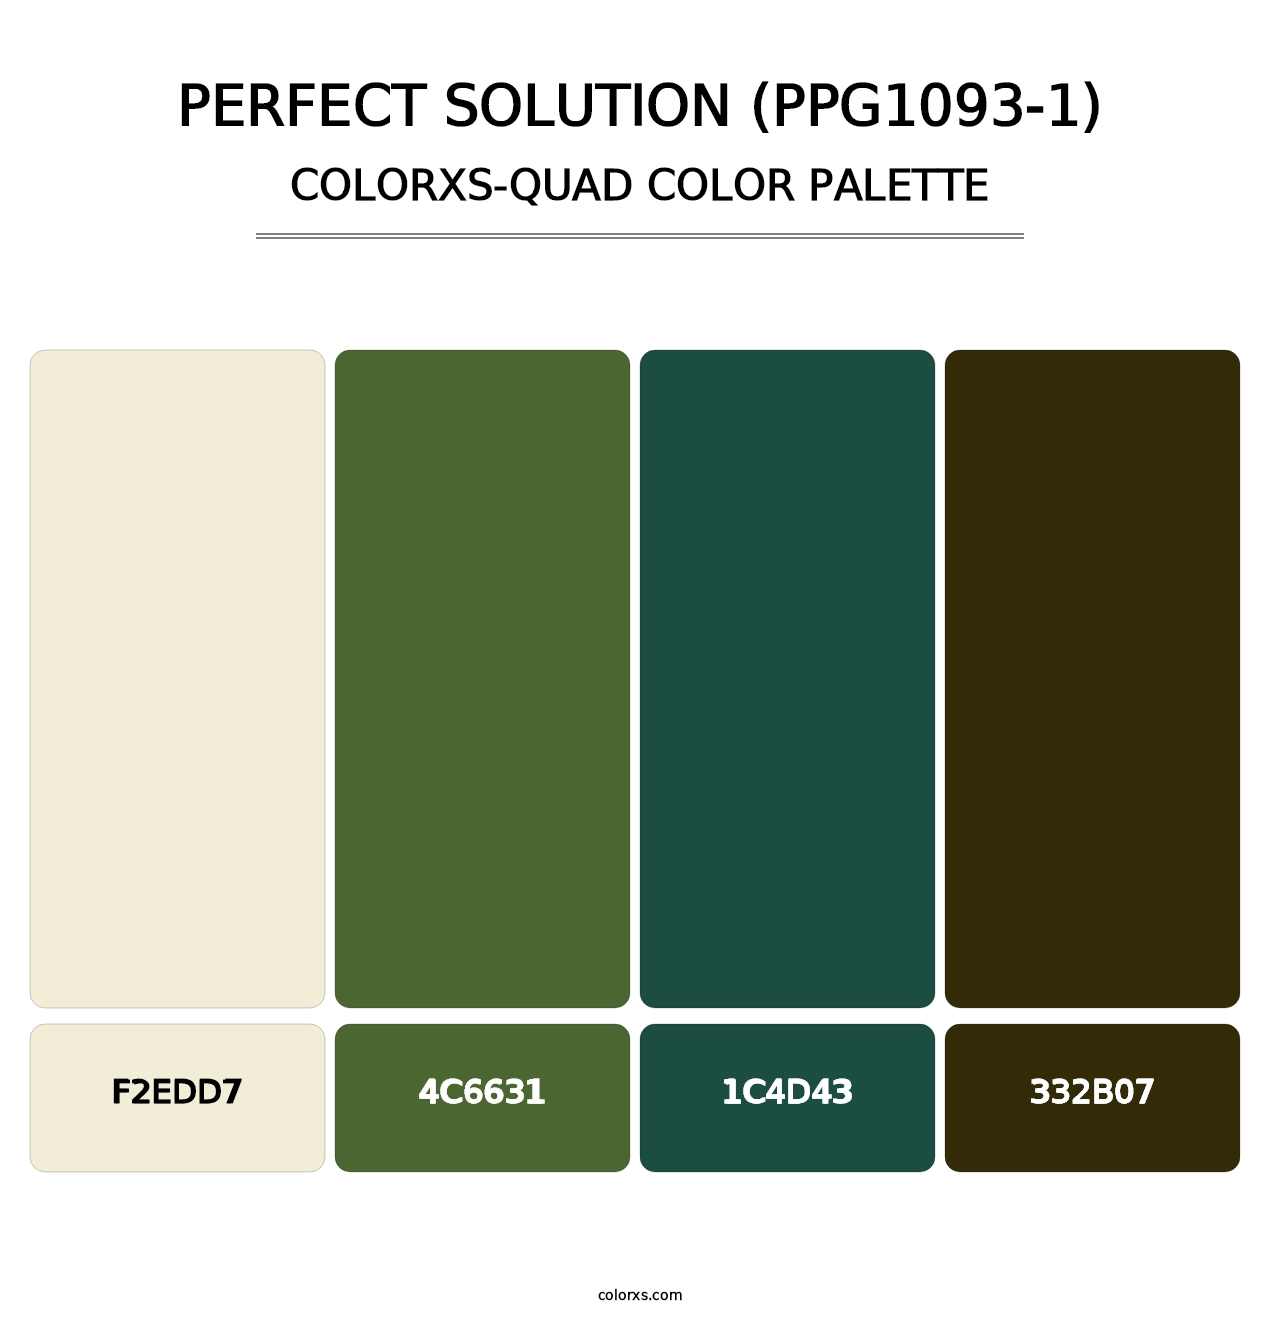 Perfect Solution (PPG1093-1) - Colorxs Quad Palette